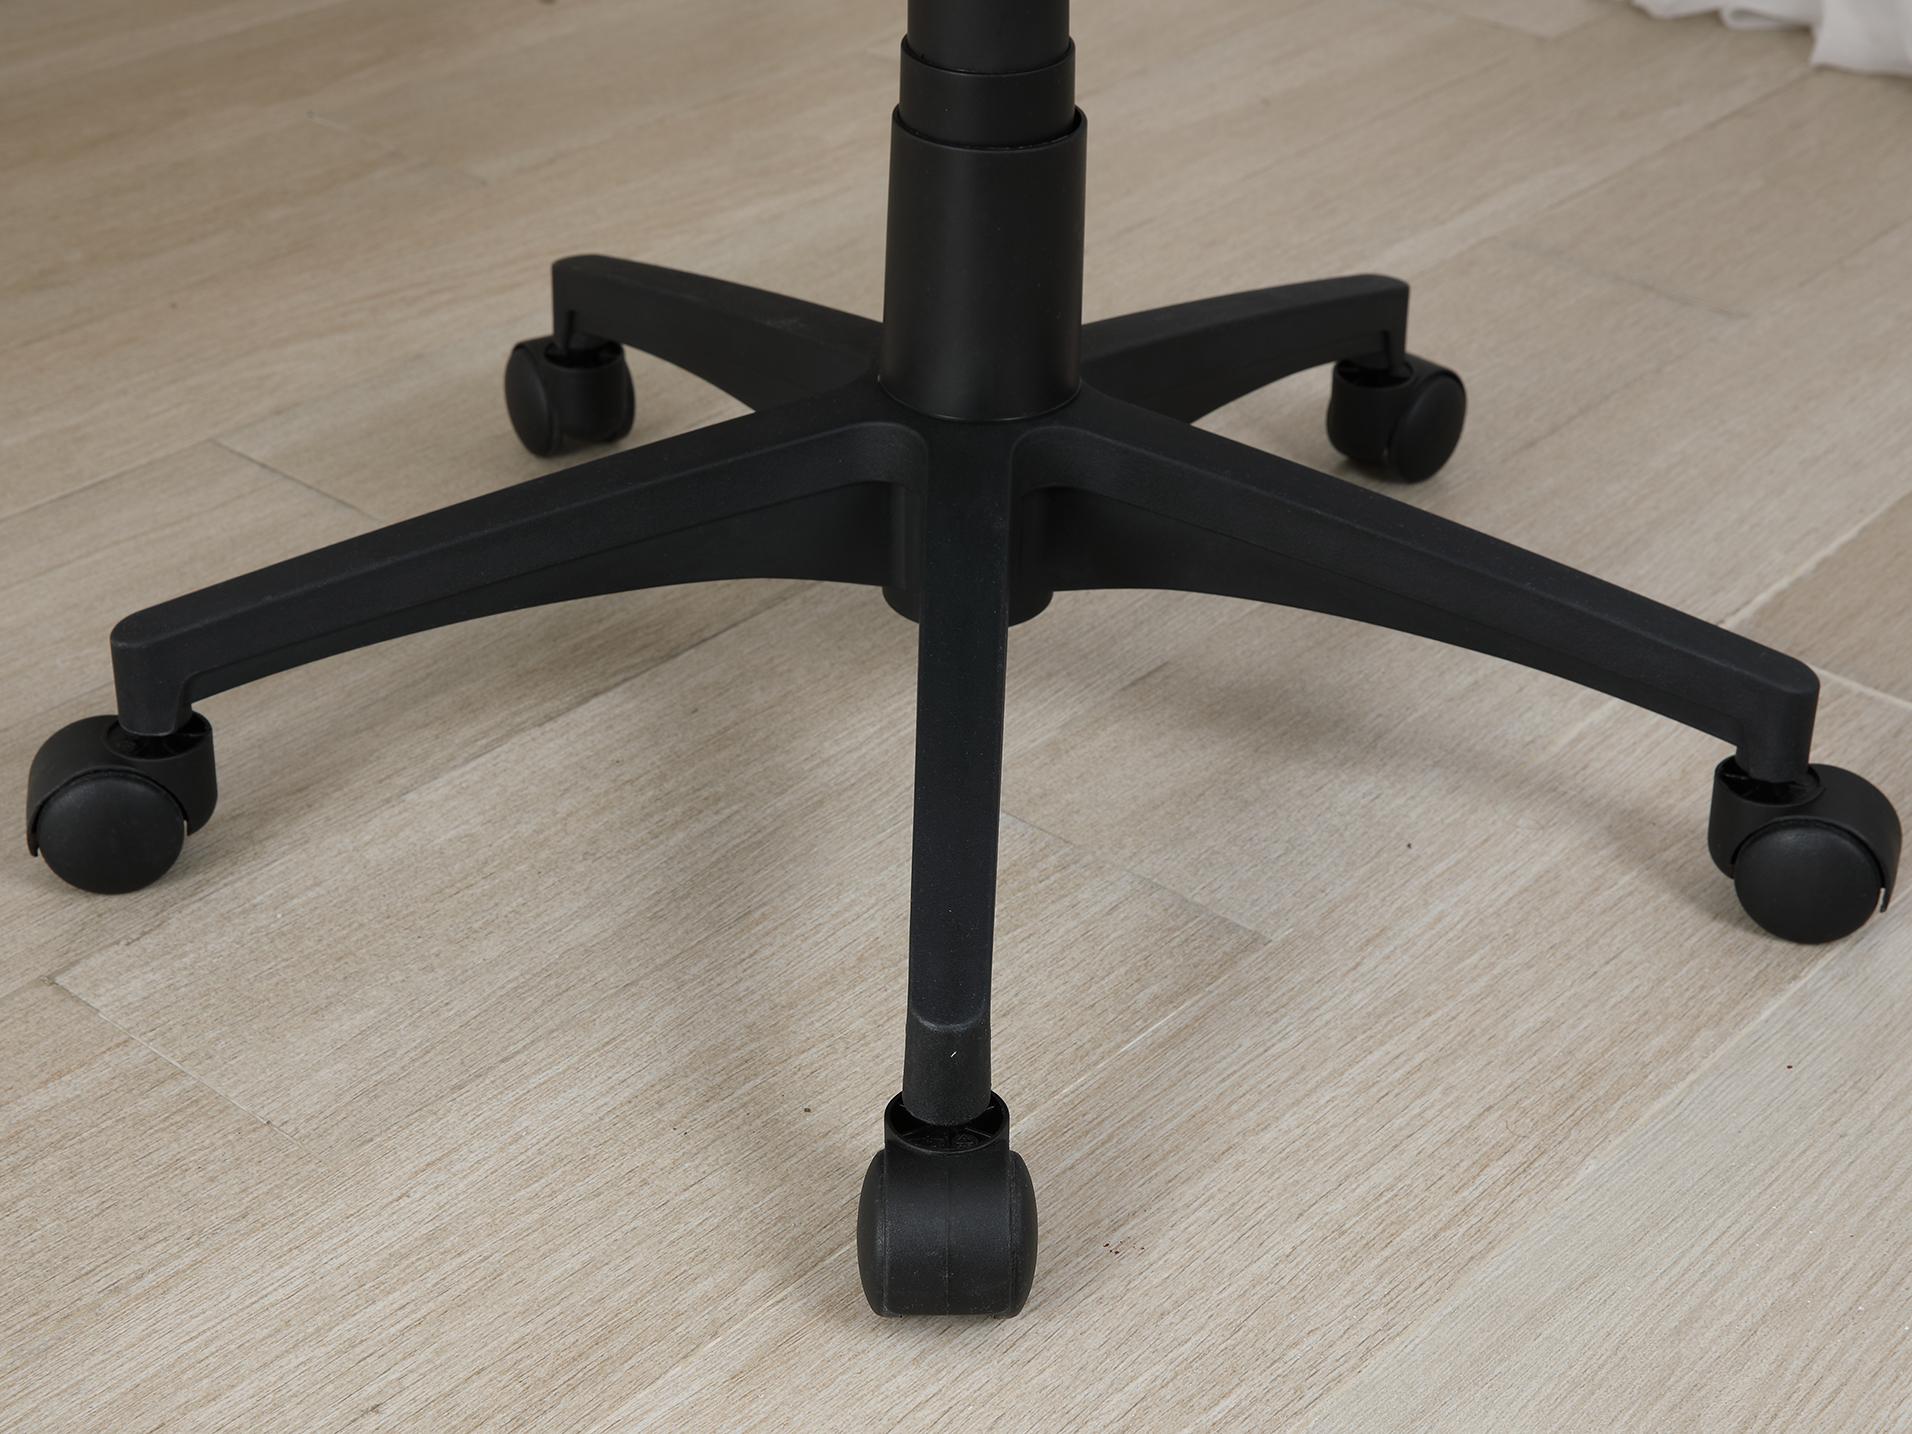 เก้าอี้สำนักงาน รุ่นเด็กซ์เตอร์ - สีดำ - เก้าอี้ออฟฟิศ ผลิตจากวัสดุพีพี เก้าอี้ปรับระดับได้